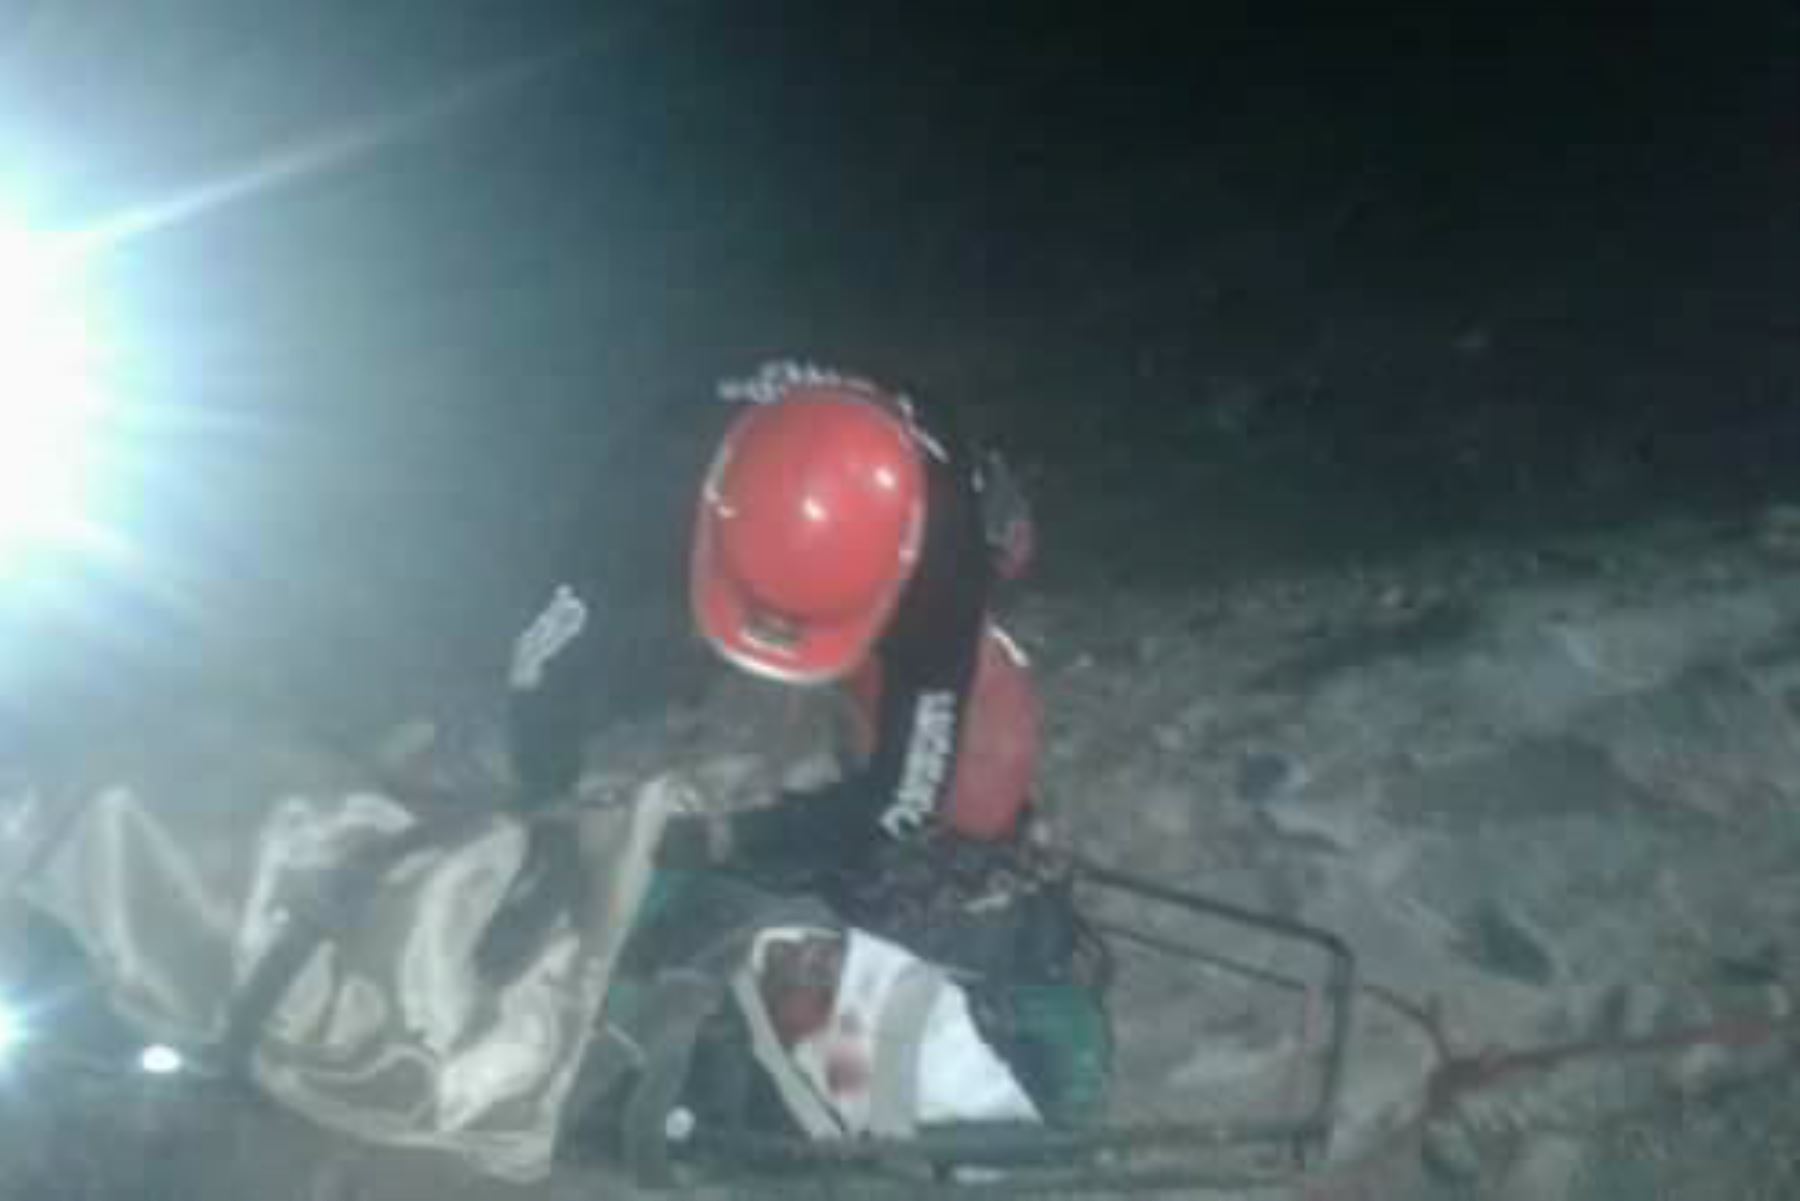 Tres personas mueren y dos resultan heridas en accidente vial en Arequipa. Foto:Facebook/ Bomberos de El Pedregal